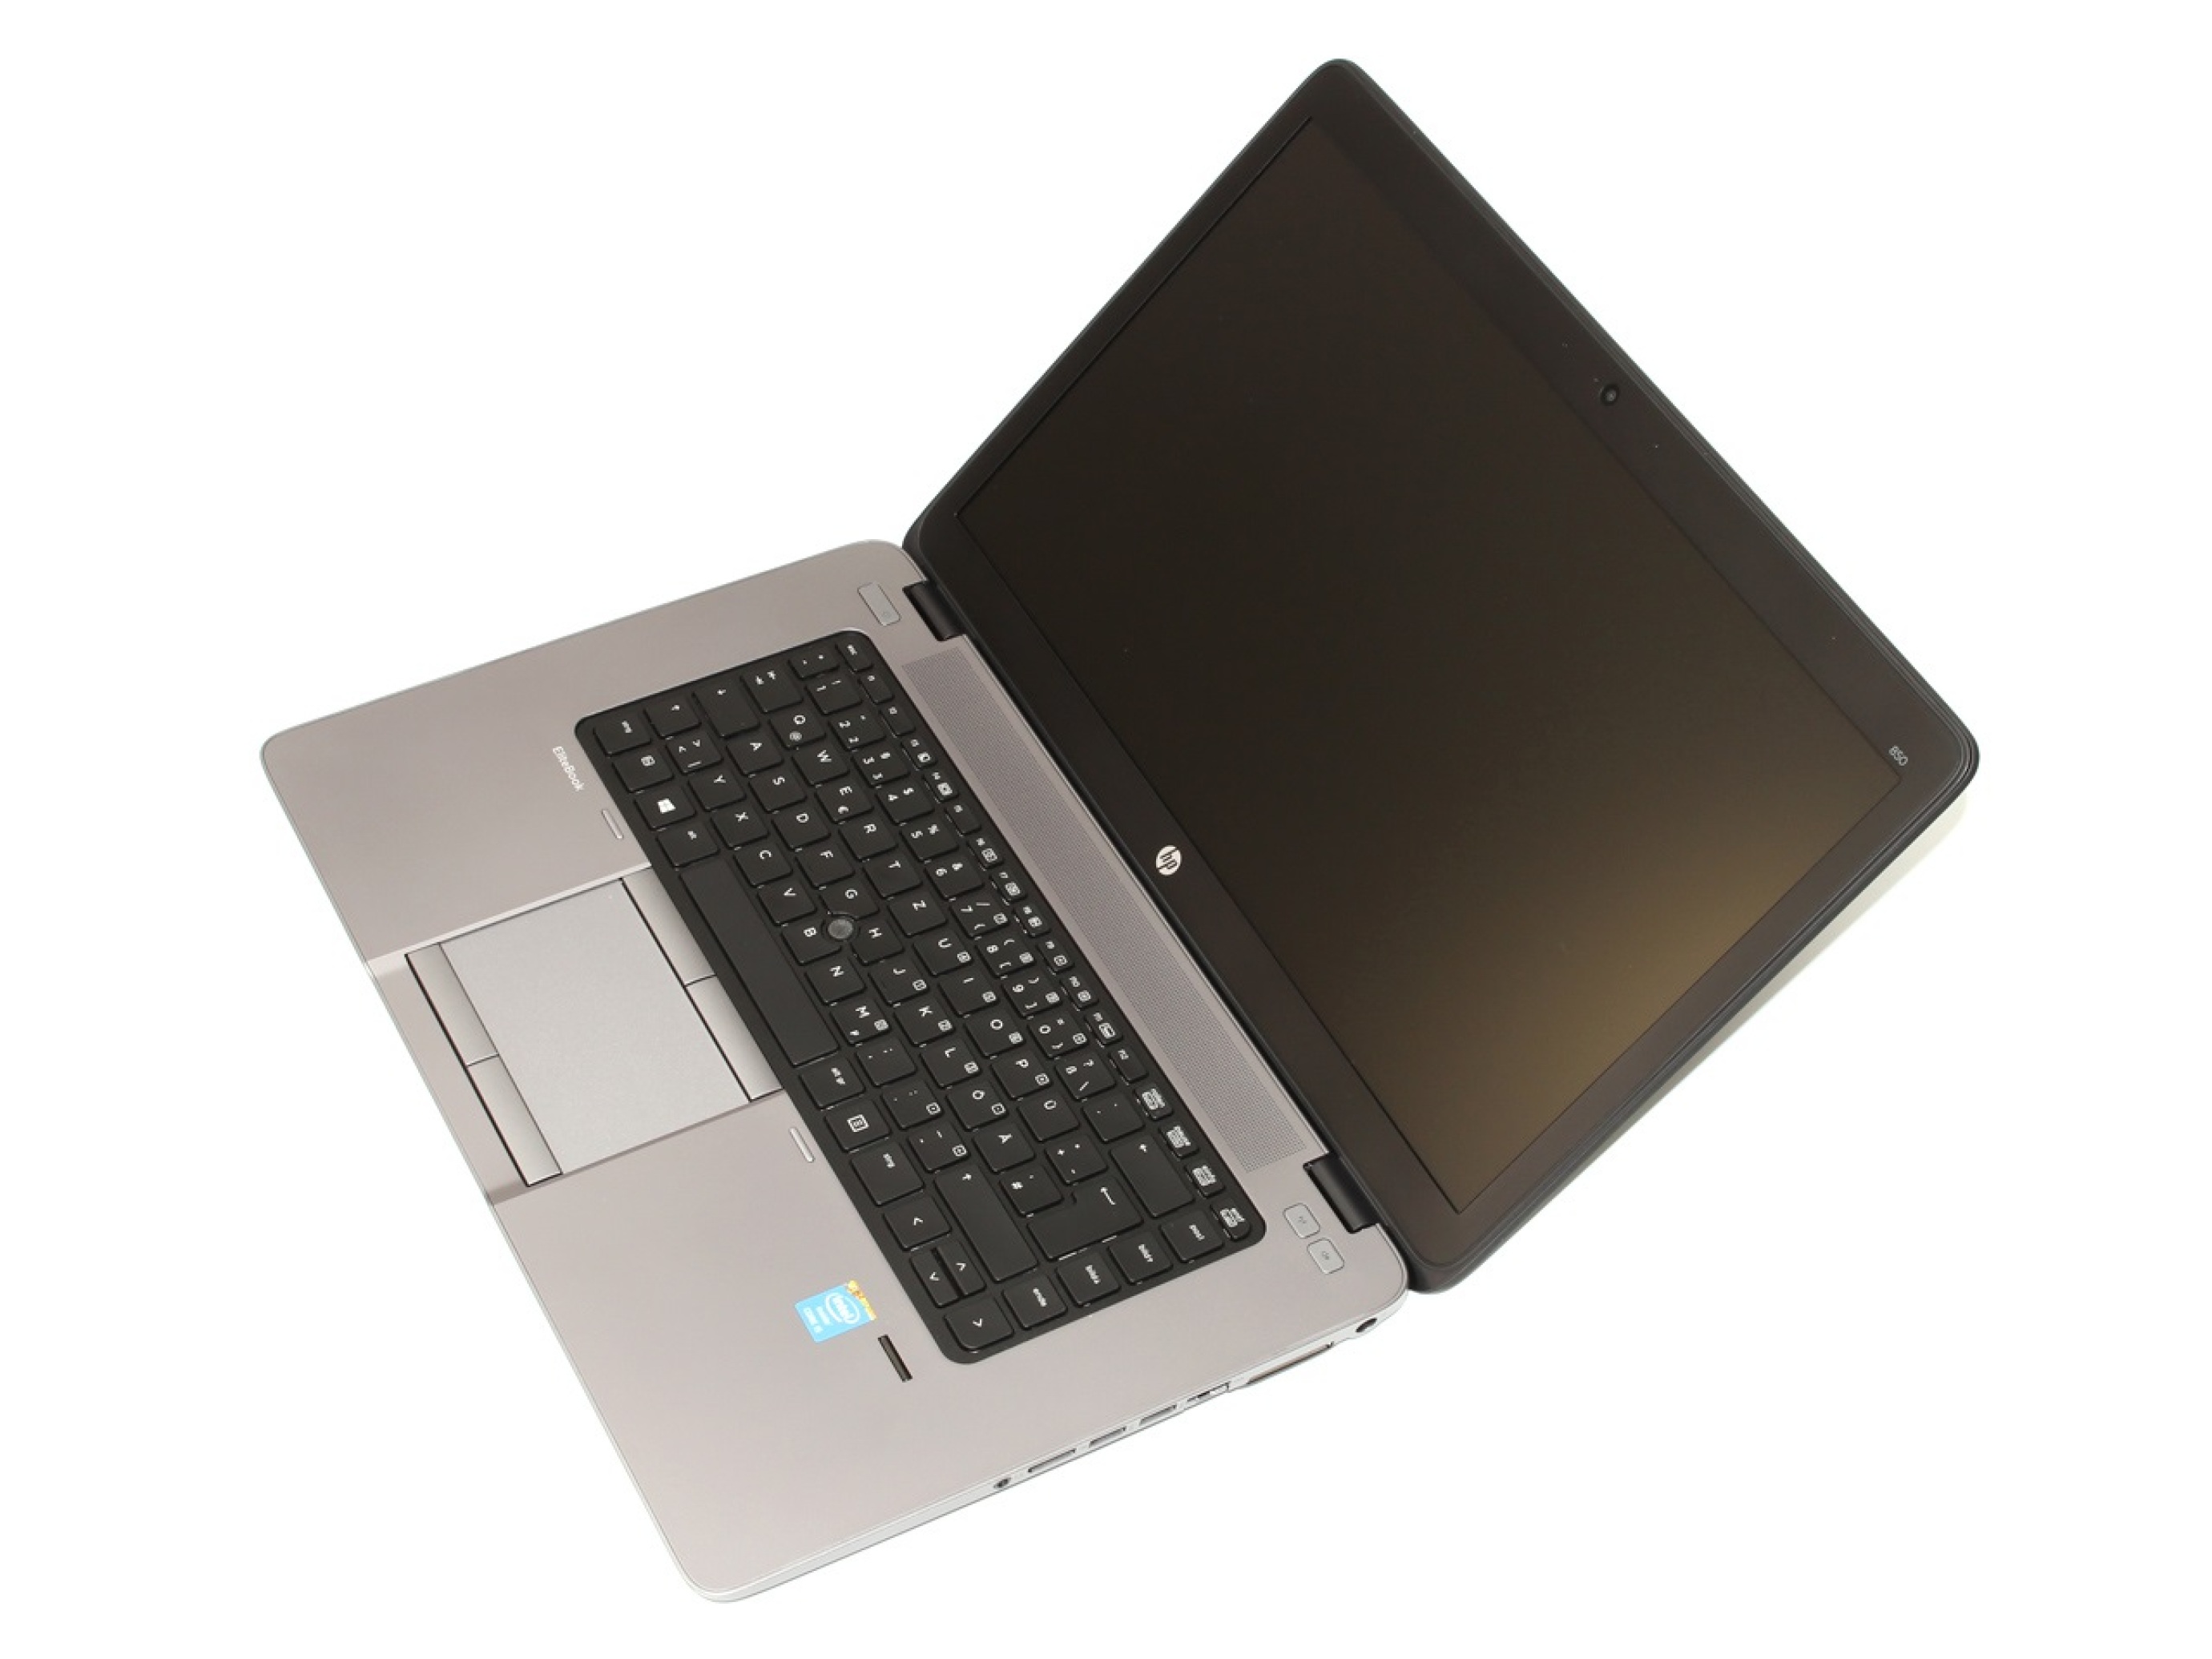  لپ تاپ اچ پی مدل EliteBook 850 G2 پردازنده CORE I7-5600U 